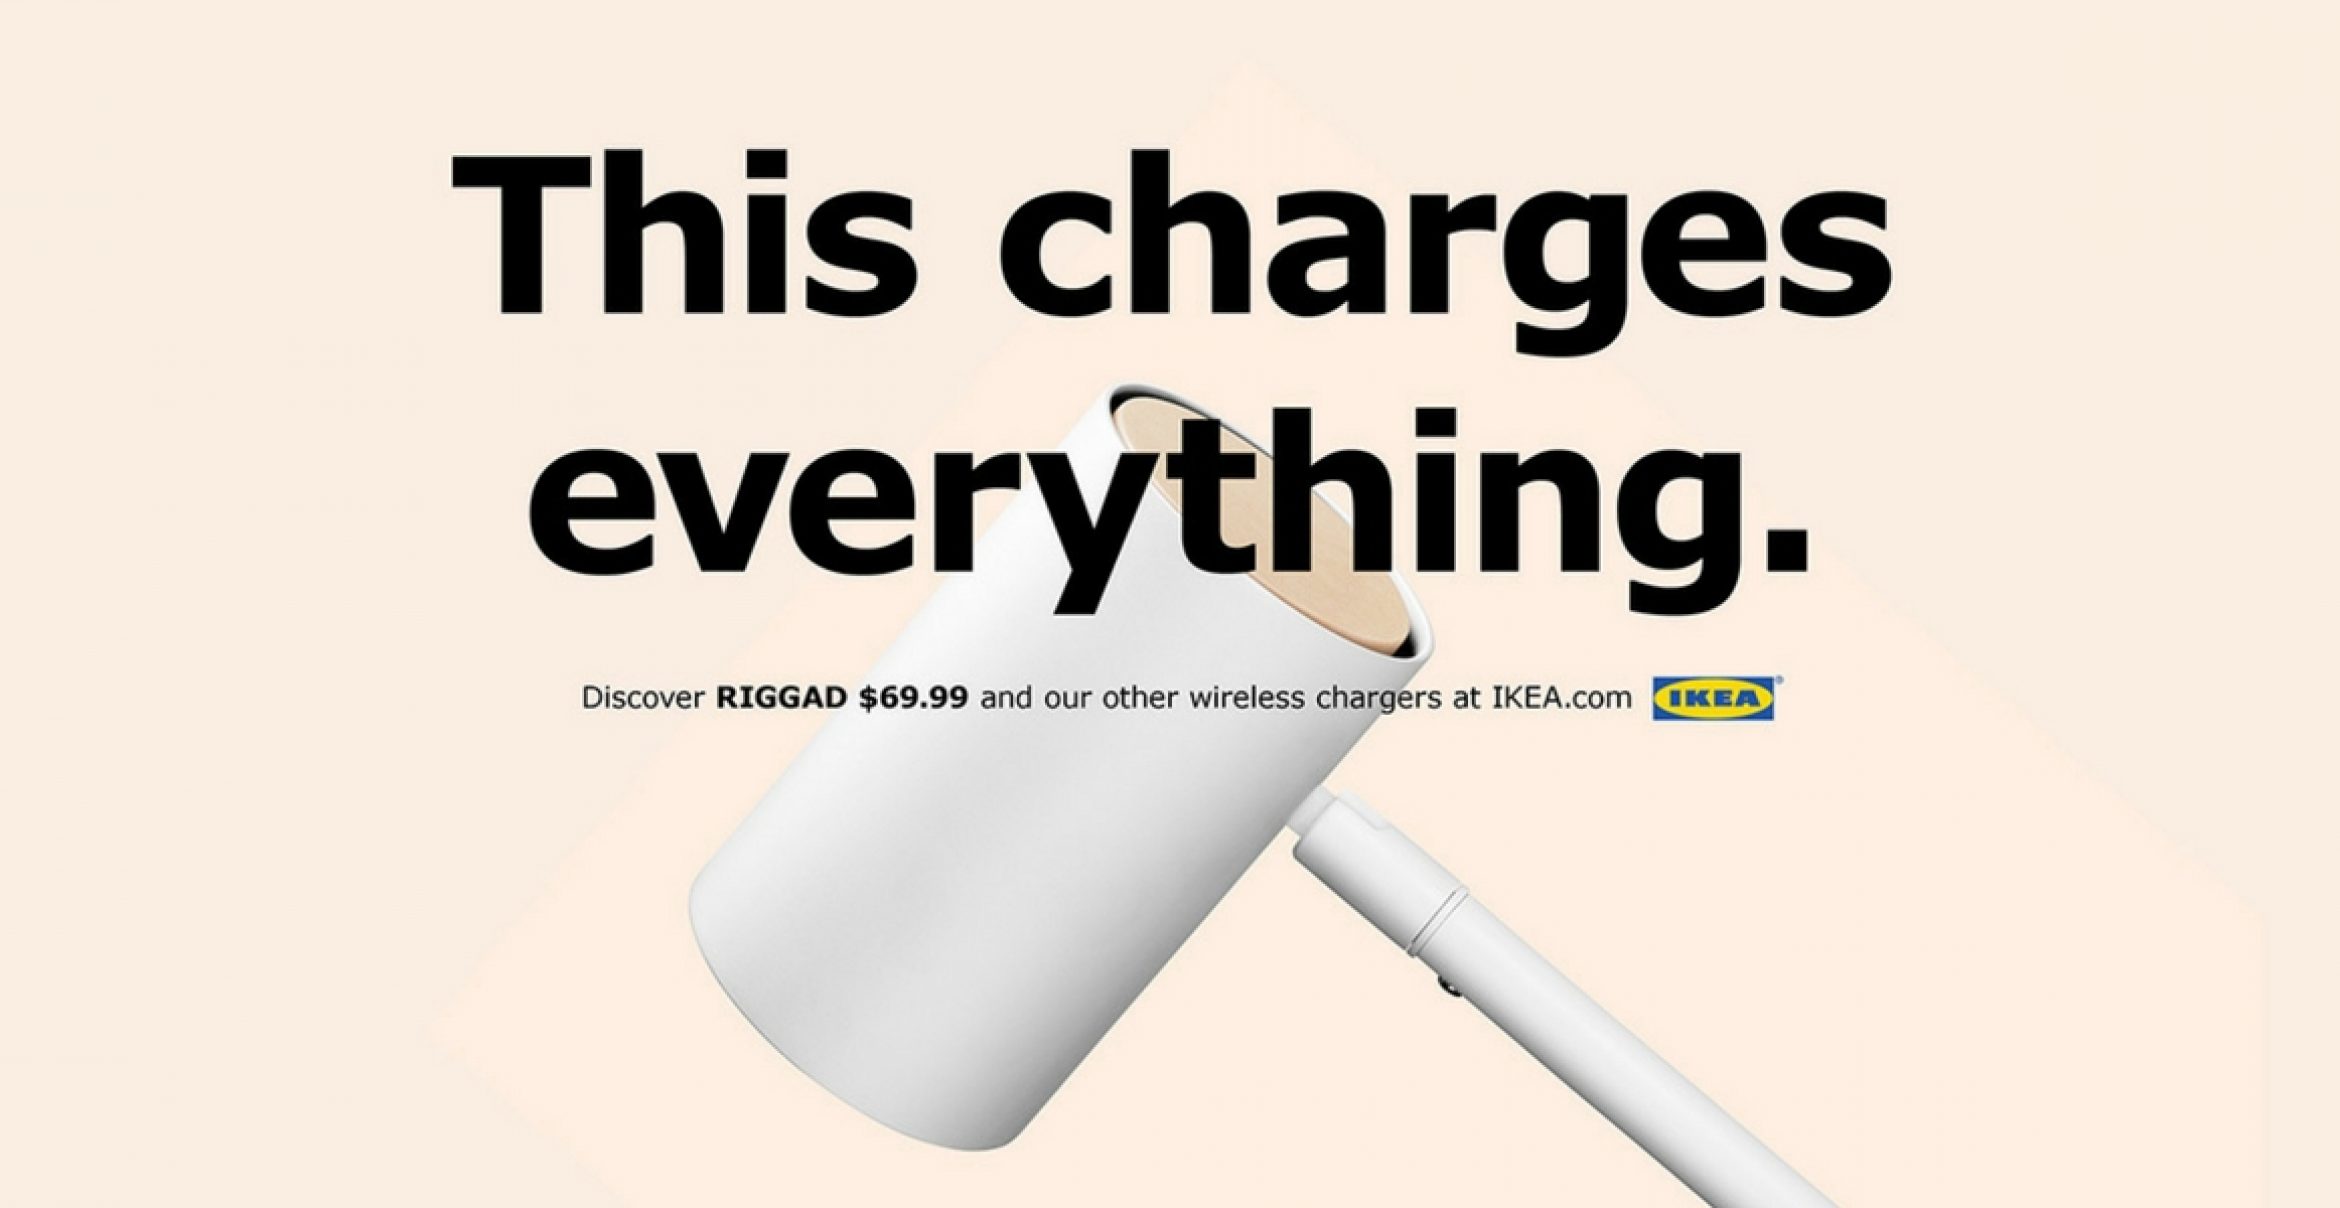 Ikea nutzt Verkaufsstart des neuen iPhones, um Werbung in eigener Sache zu machen